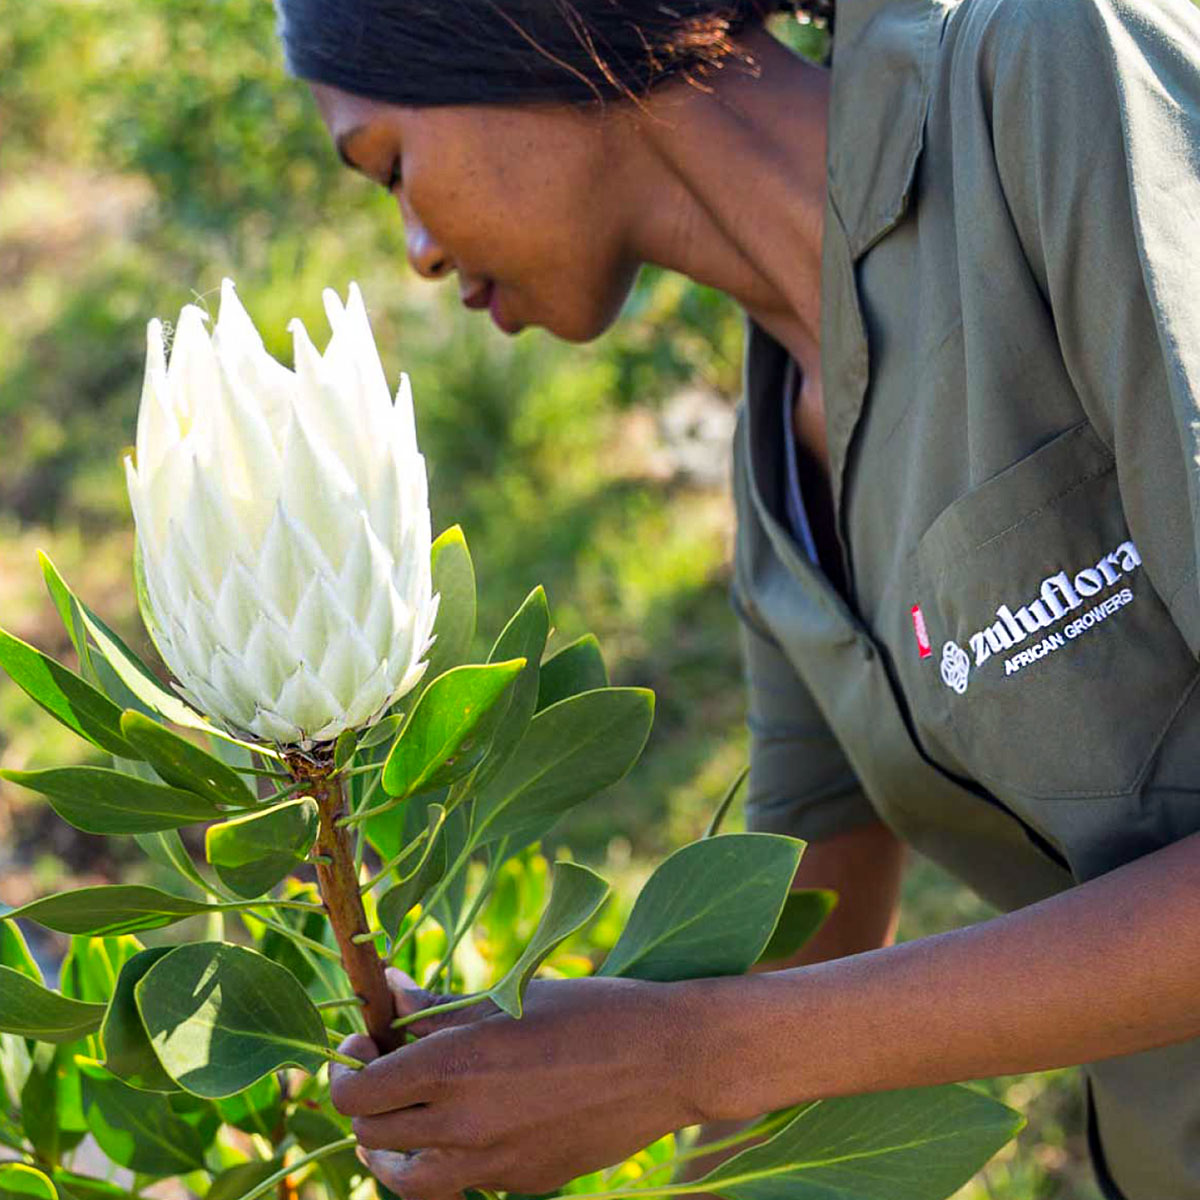 Zuluflora African growers feature - on Thursd